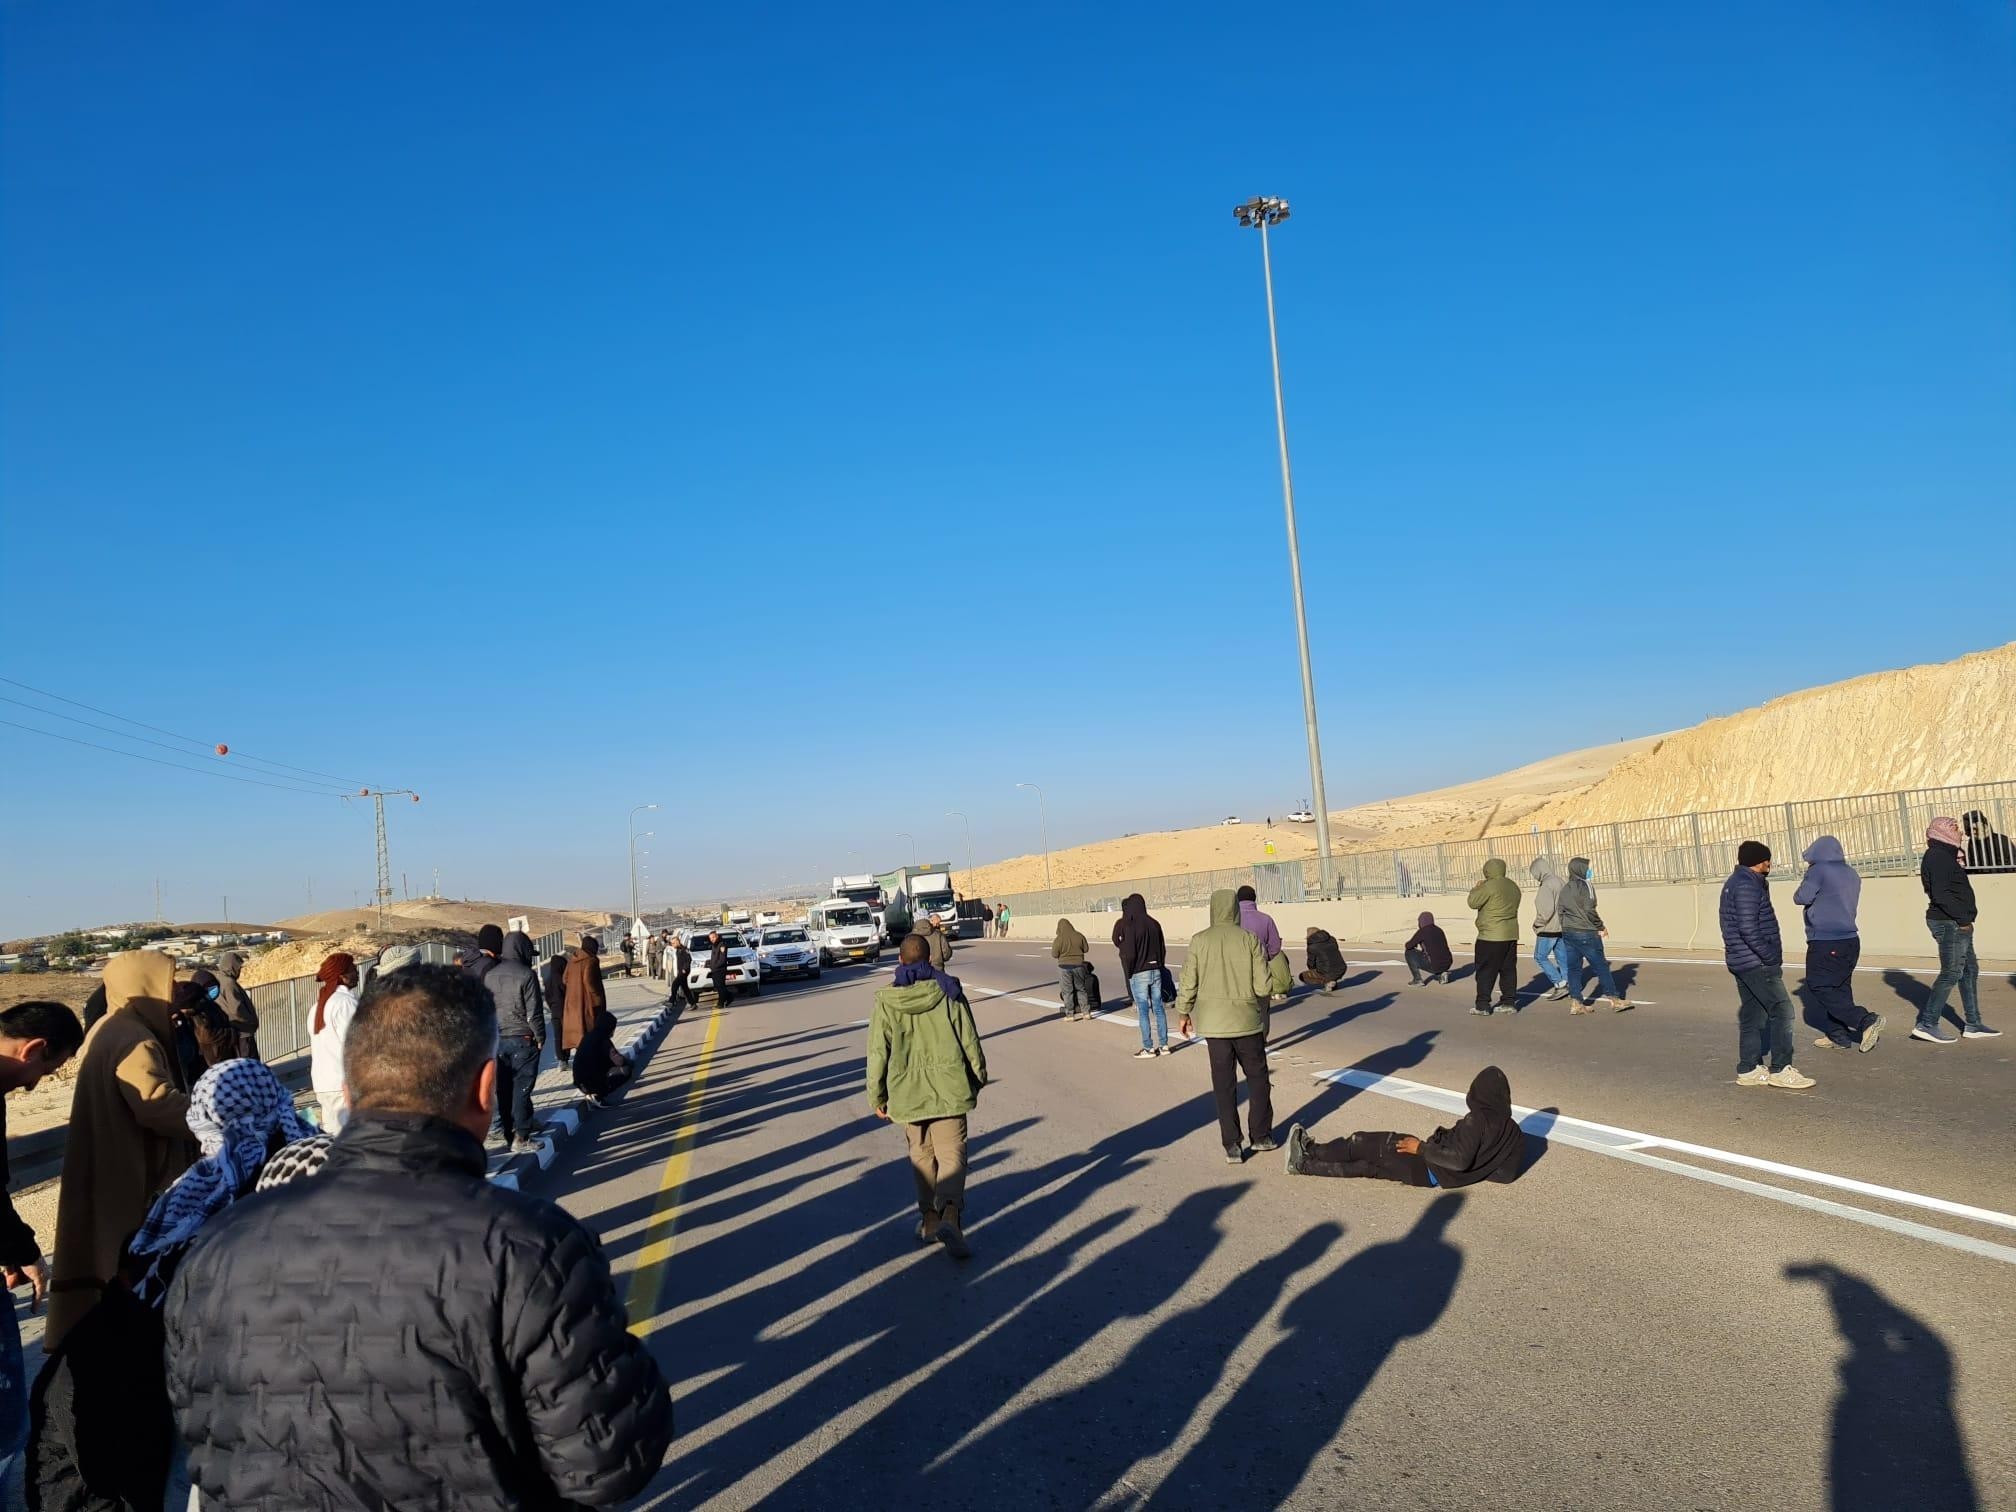 הפגנה ושביתה של תושבים ערבים-בדואים בנגב המוחים נגד נטיעות על אדמותיהם